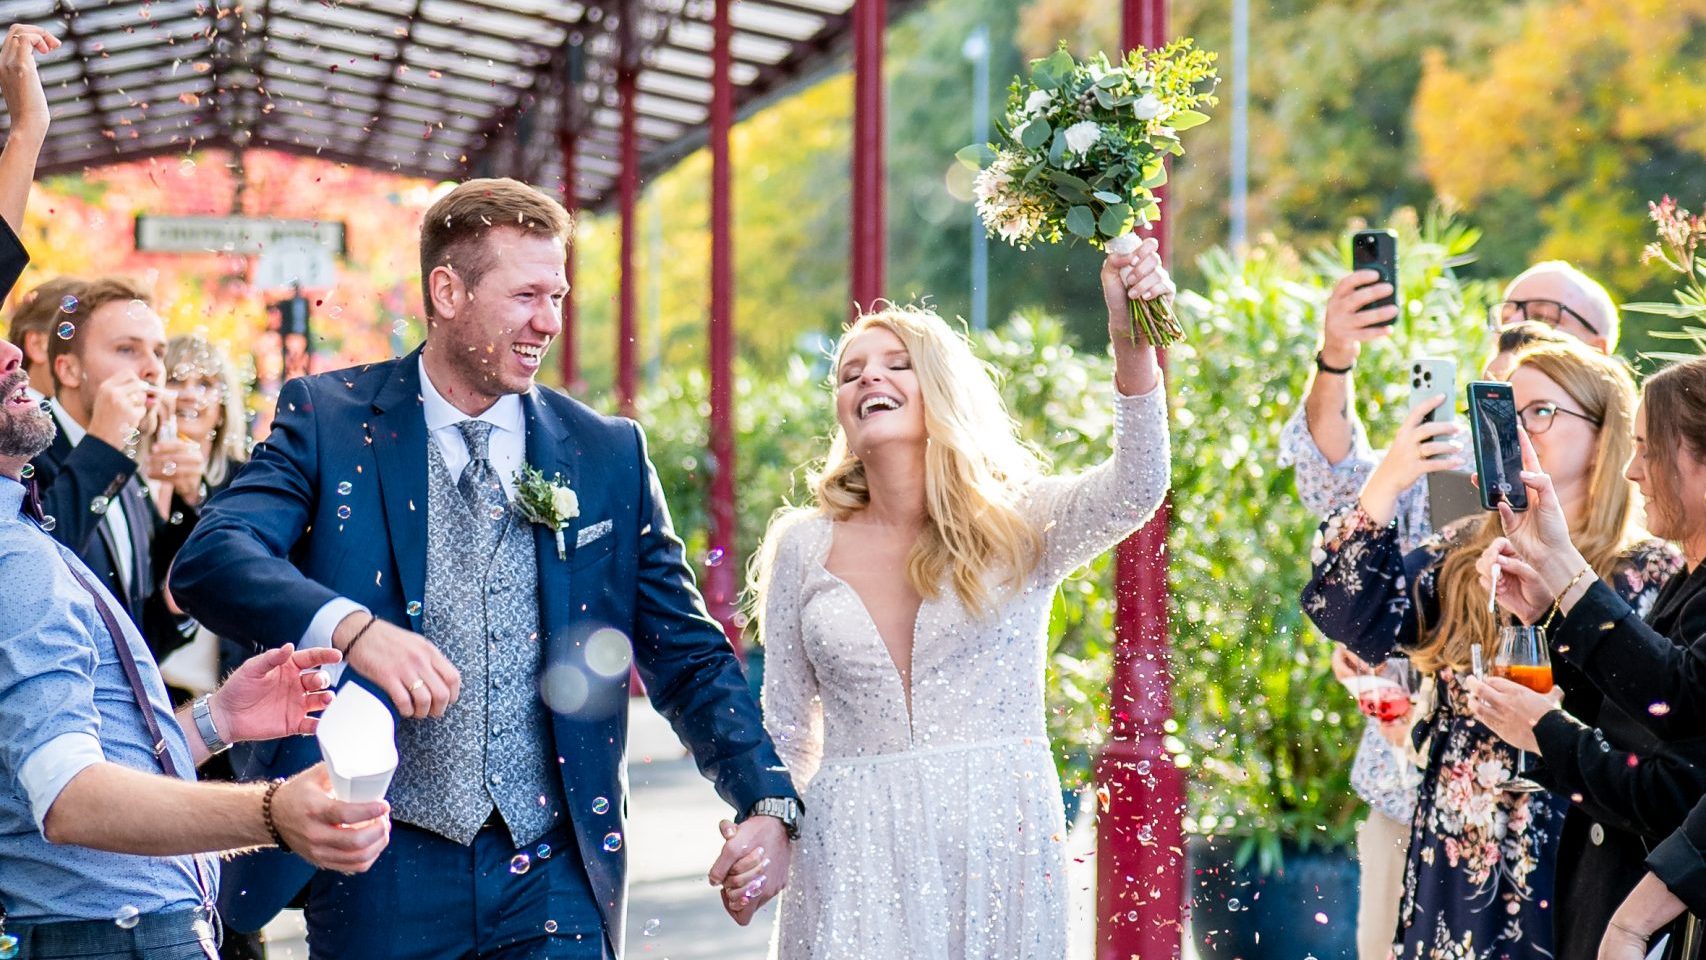 Ein Brautpaar erreicht den Empfang der Hochzeitsfeier im Nordbahnhof Krefeld. Die Braut hält jubelnd den Brautstrauß hoch, während die Gäste Blüten werfen und Seifenblasen pusten.